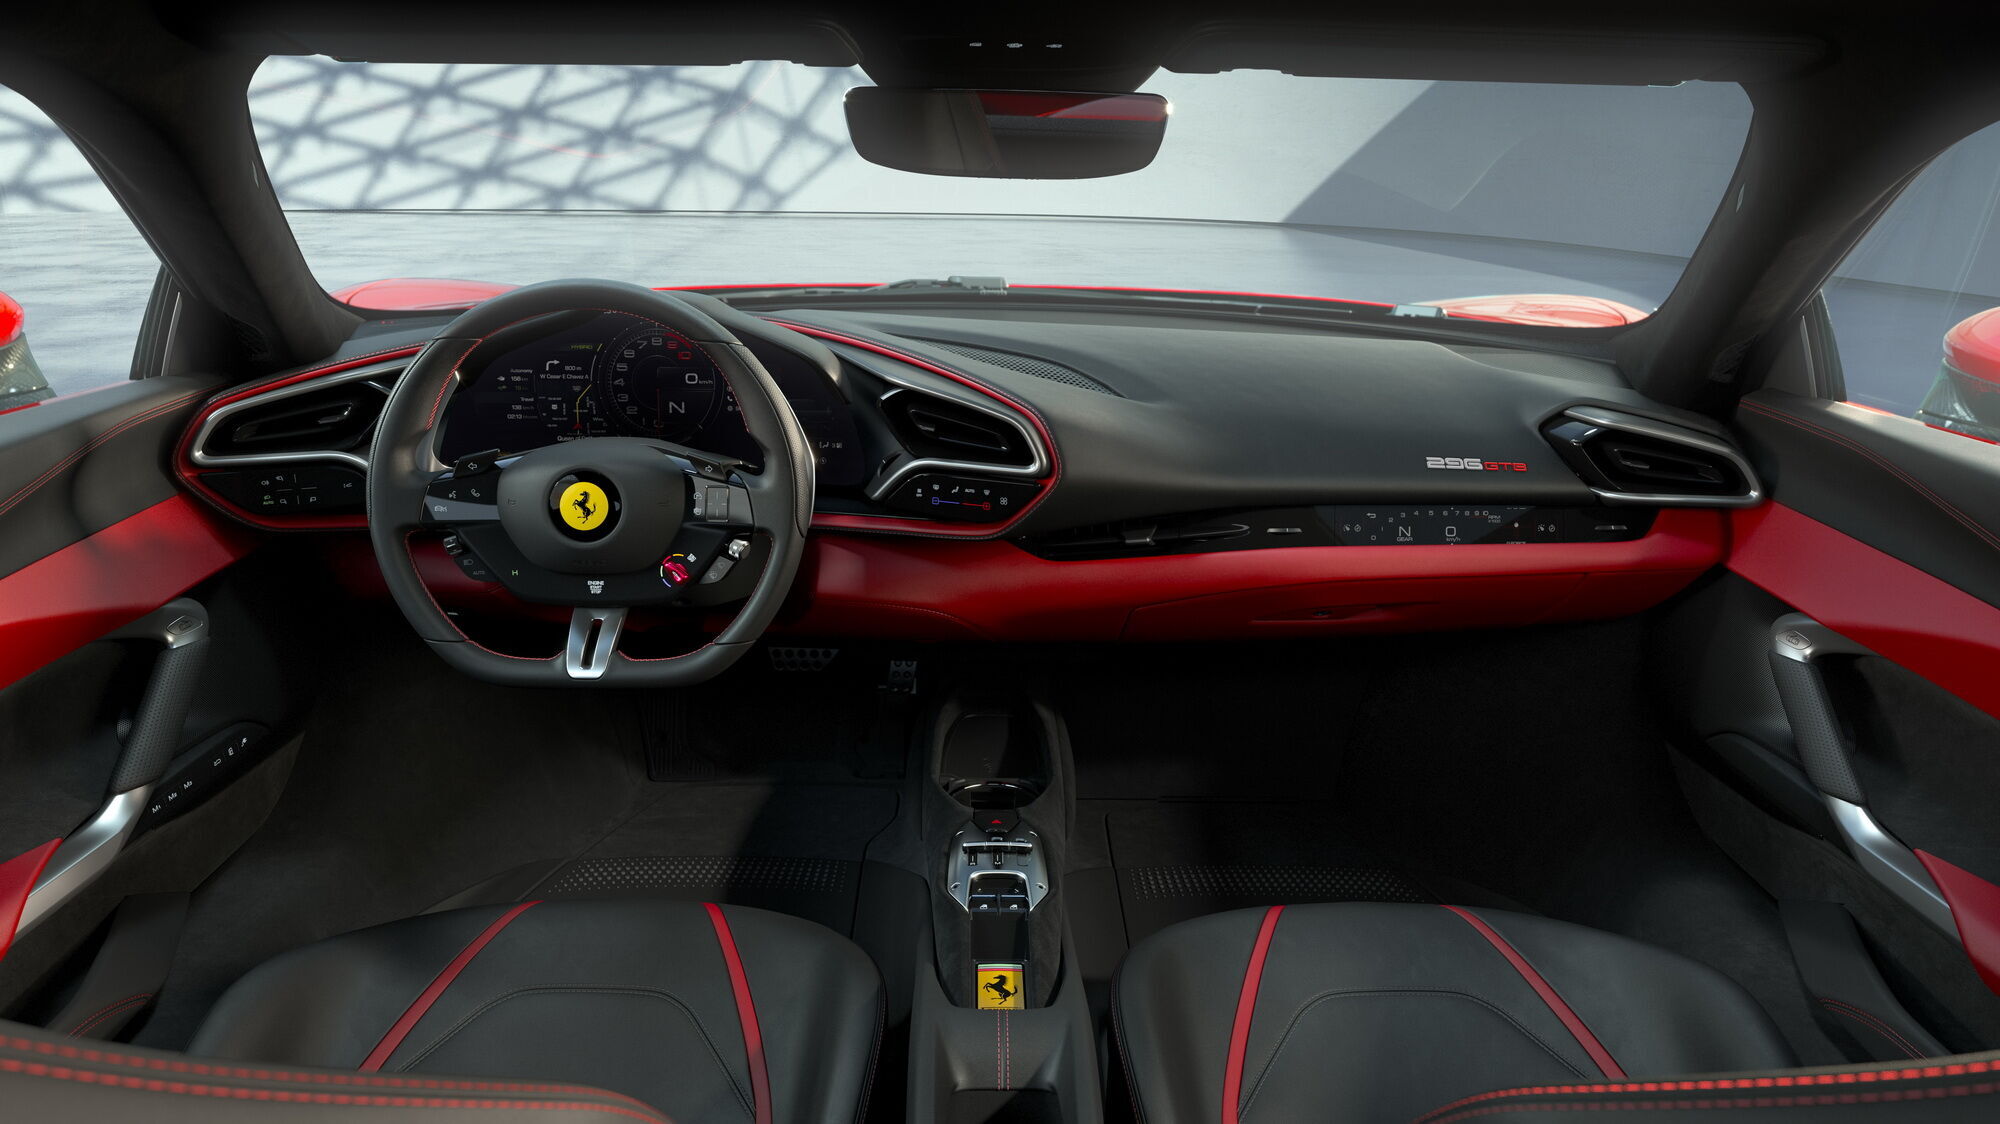 Ferrari 296 GTB получил полностью цифровой кокпит с обилием сенсорных кнопок, а также электронными экранами приборов и мультимедиа